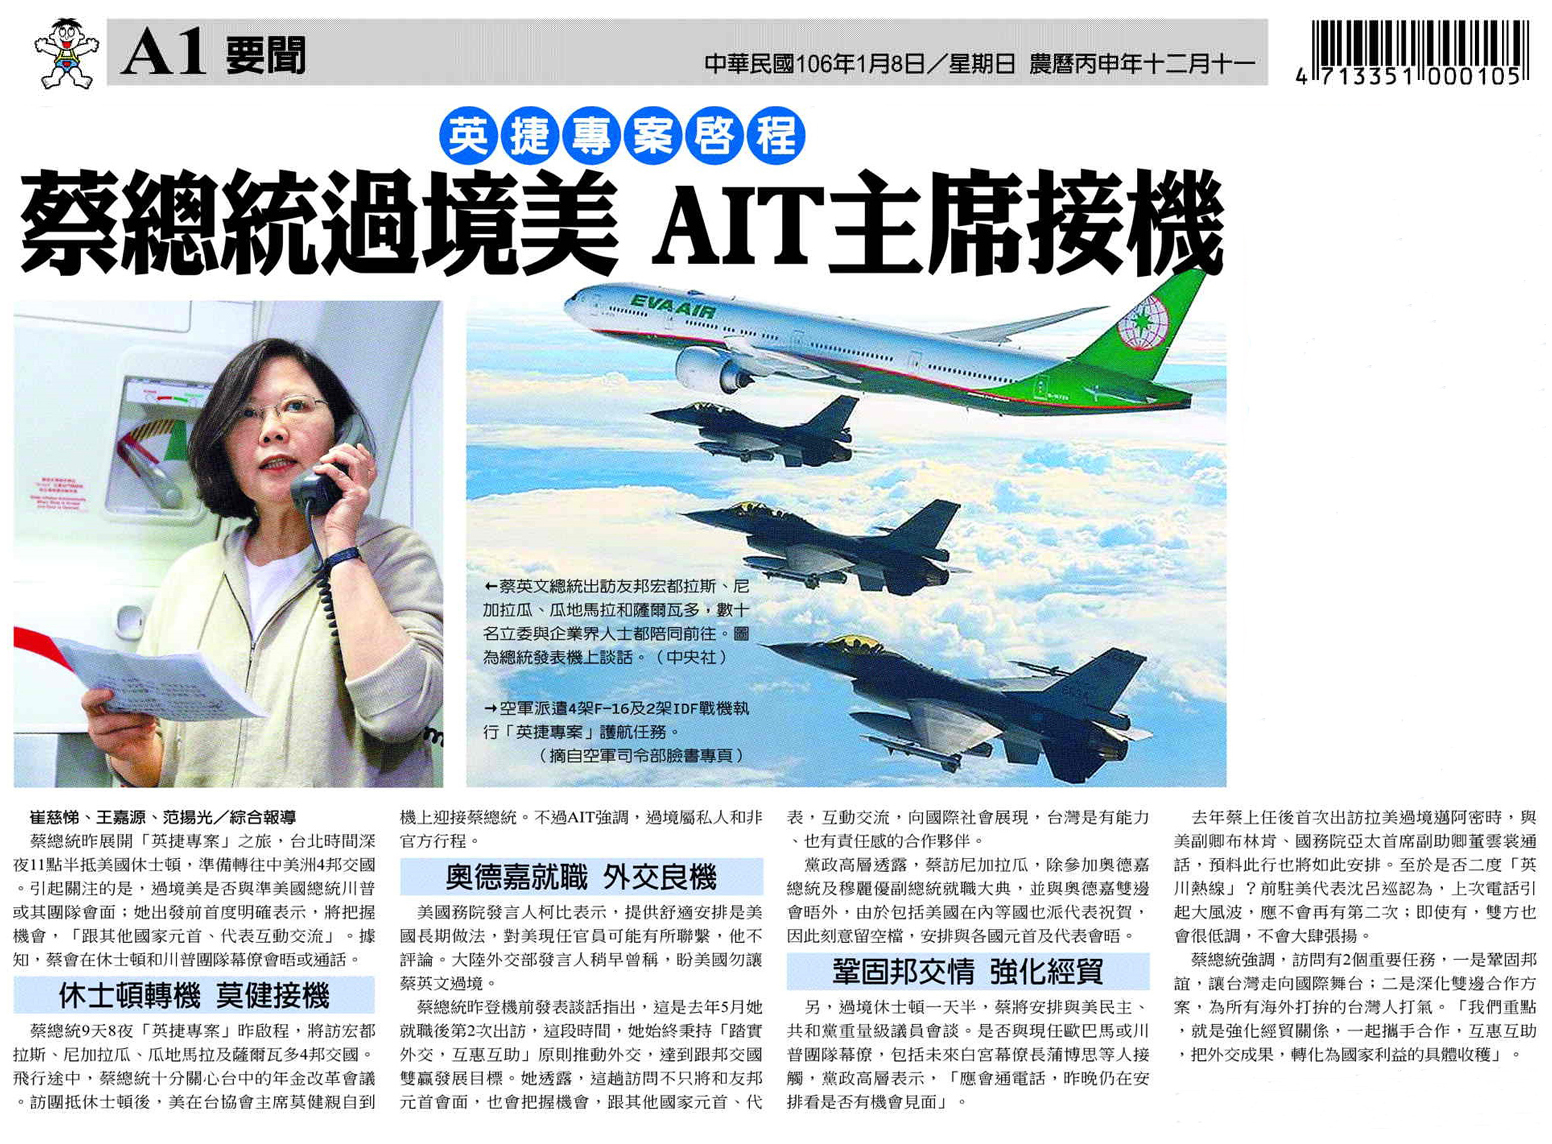 Comienza el viaje "Proyecto Ing-Jie": el presidente del Instituto Americano en Taiwán recibe a la Presidenta Tsai durante su escala en EEUU